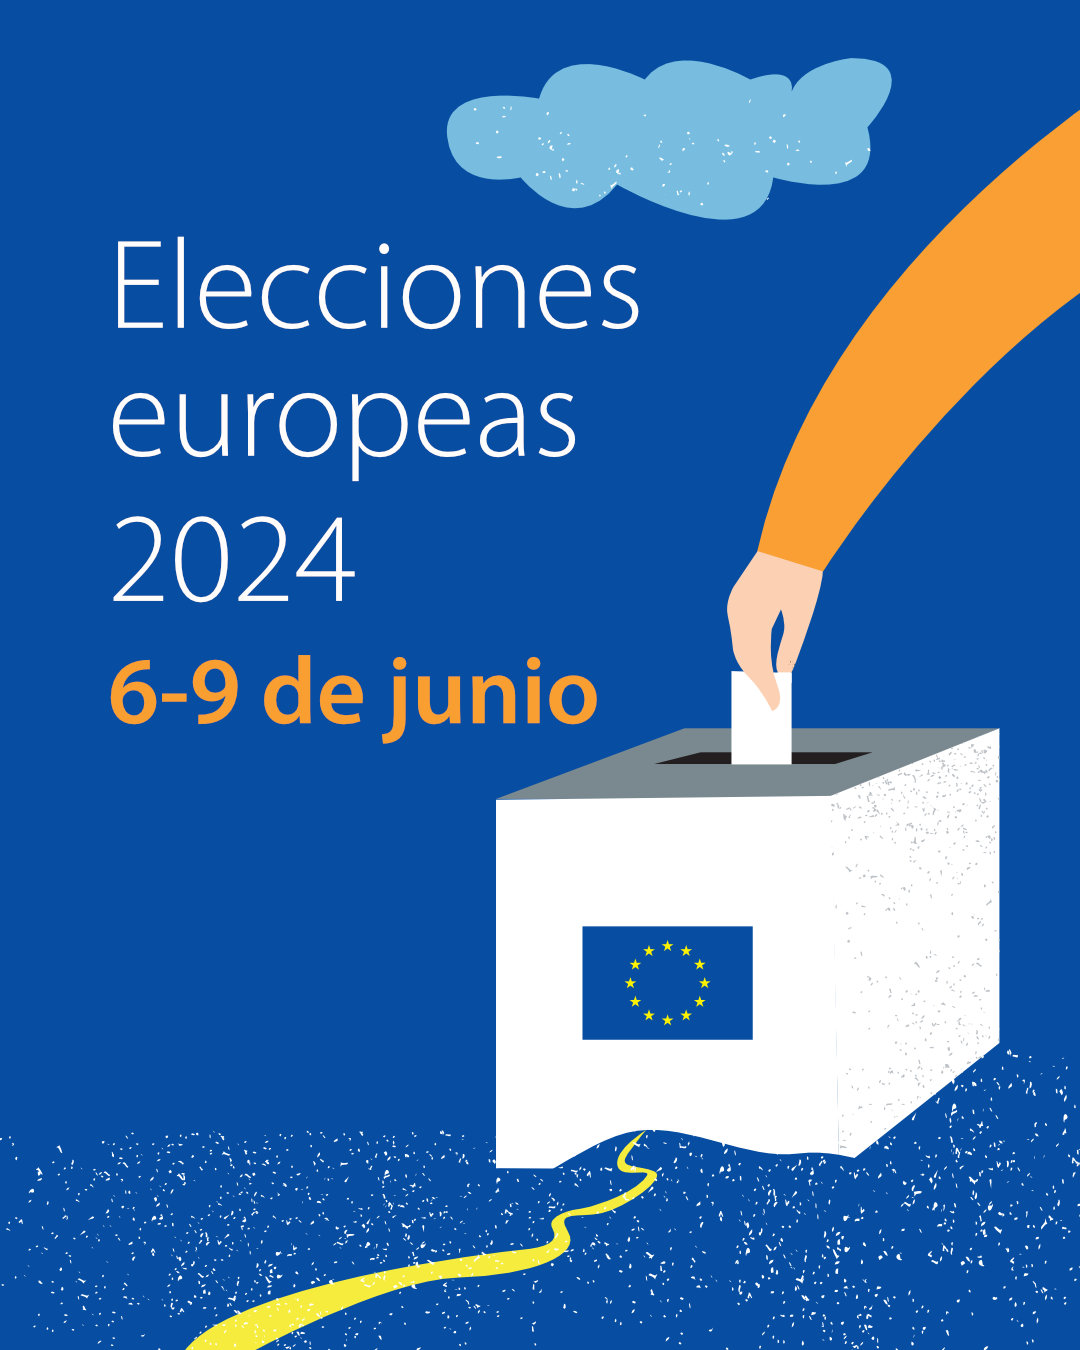 Elecciones europeas 2024 - 4:5.jpg